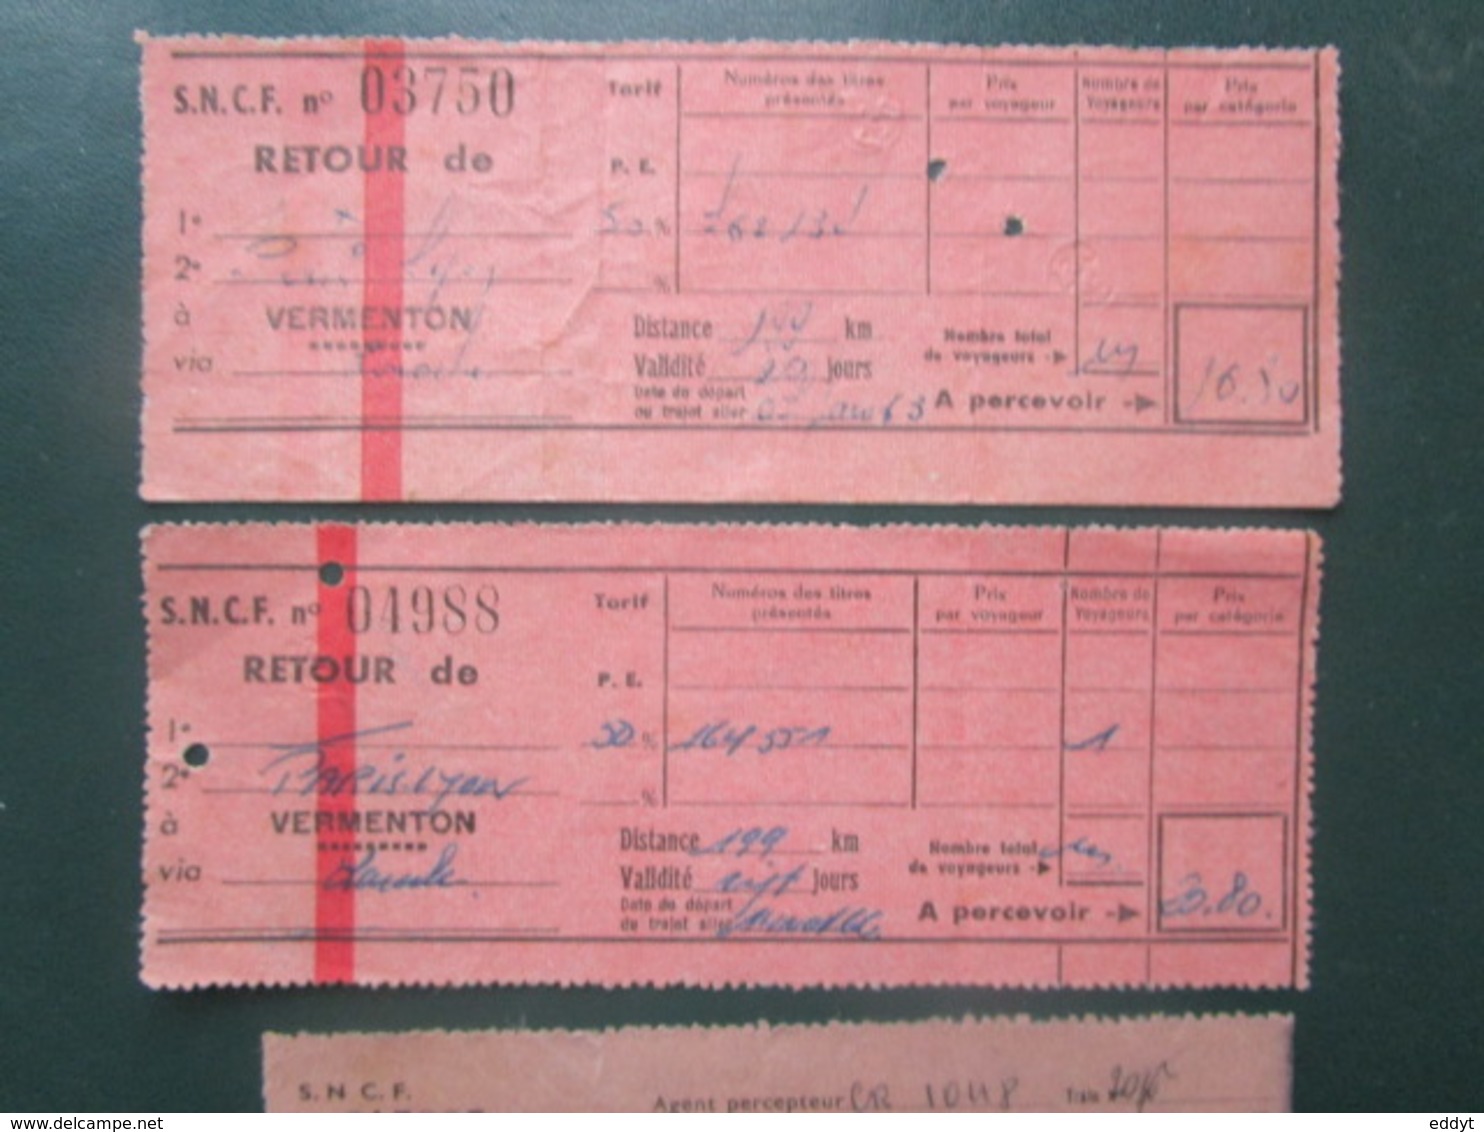 4 BILLETS Tickets De Train - S.N.C.F.  - France -  Dans Les Années 1945/années 60 "couleur Vieux Rose" - Welt